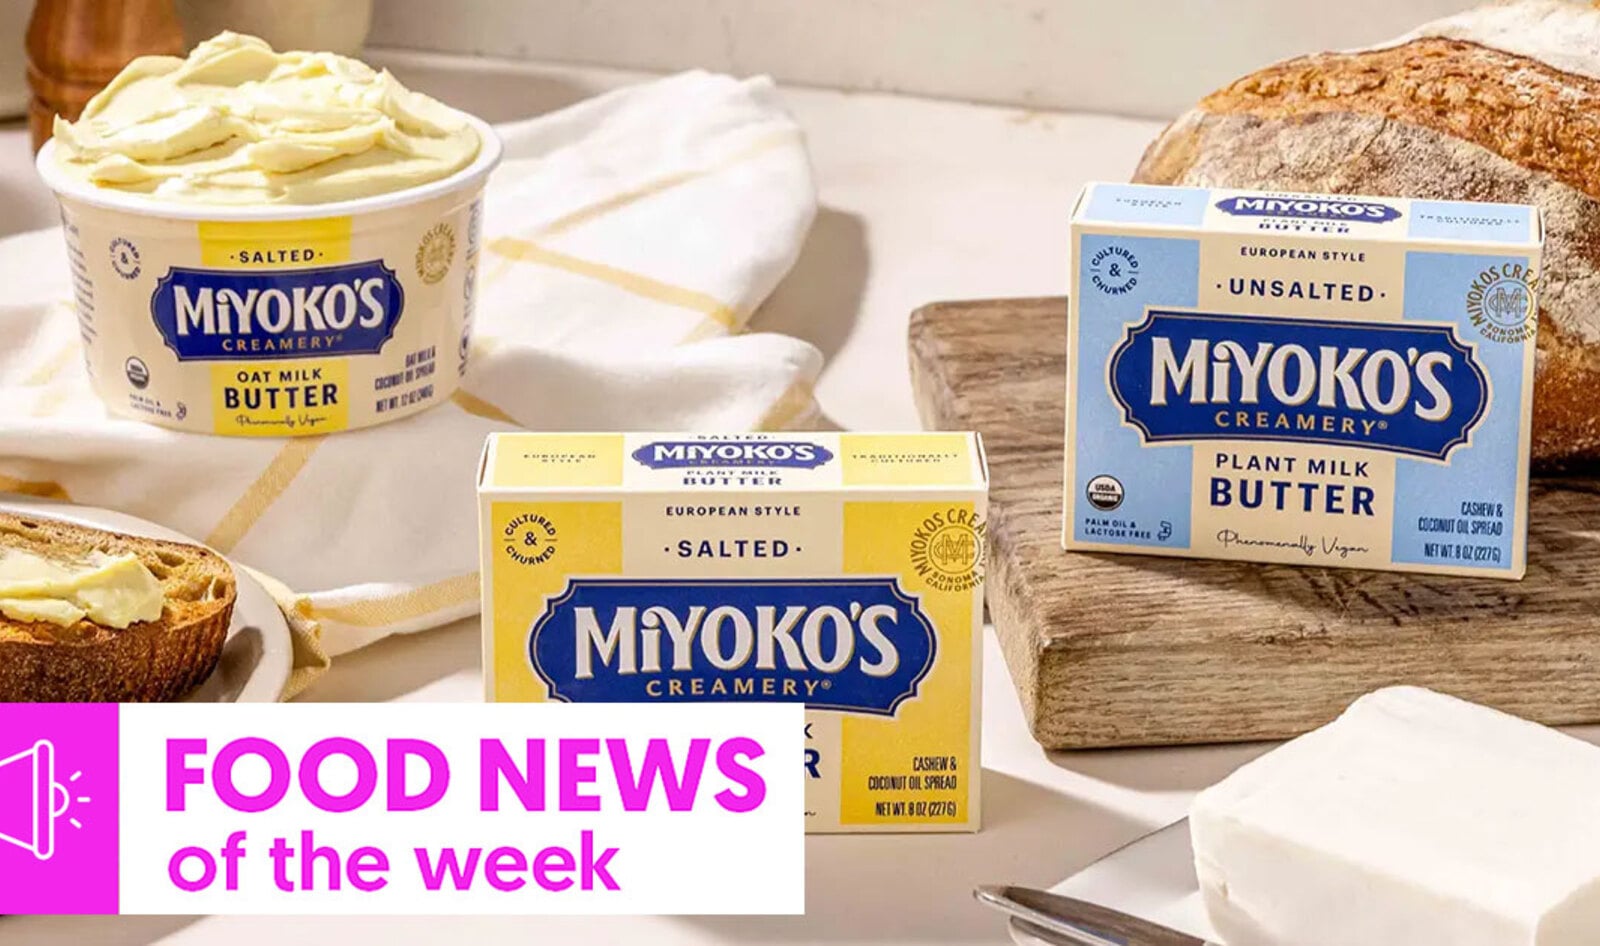 Vegan Food News of the Week: Miyoko’s Considers Sale, Virgin Atlantic’s Snack Bars, and More